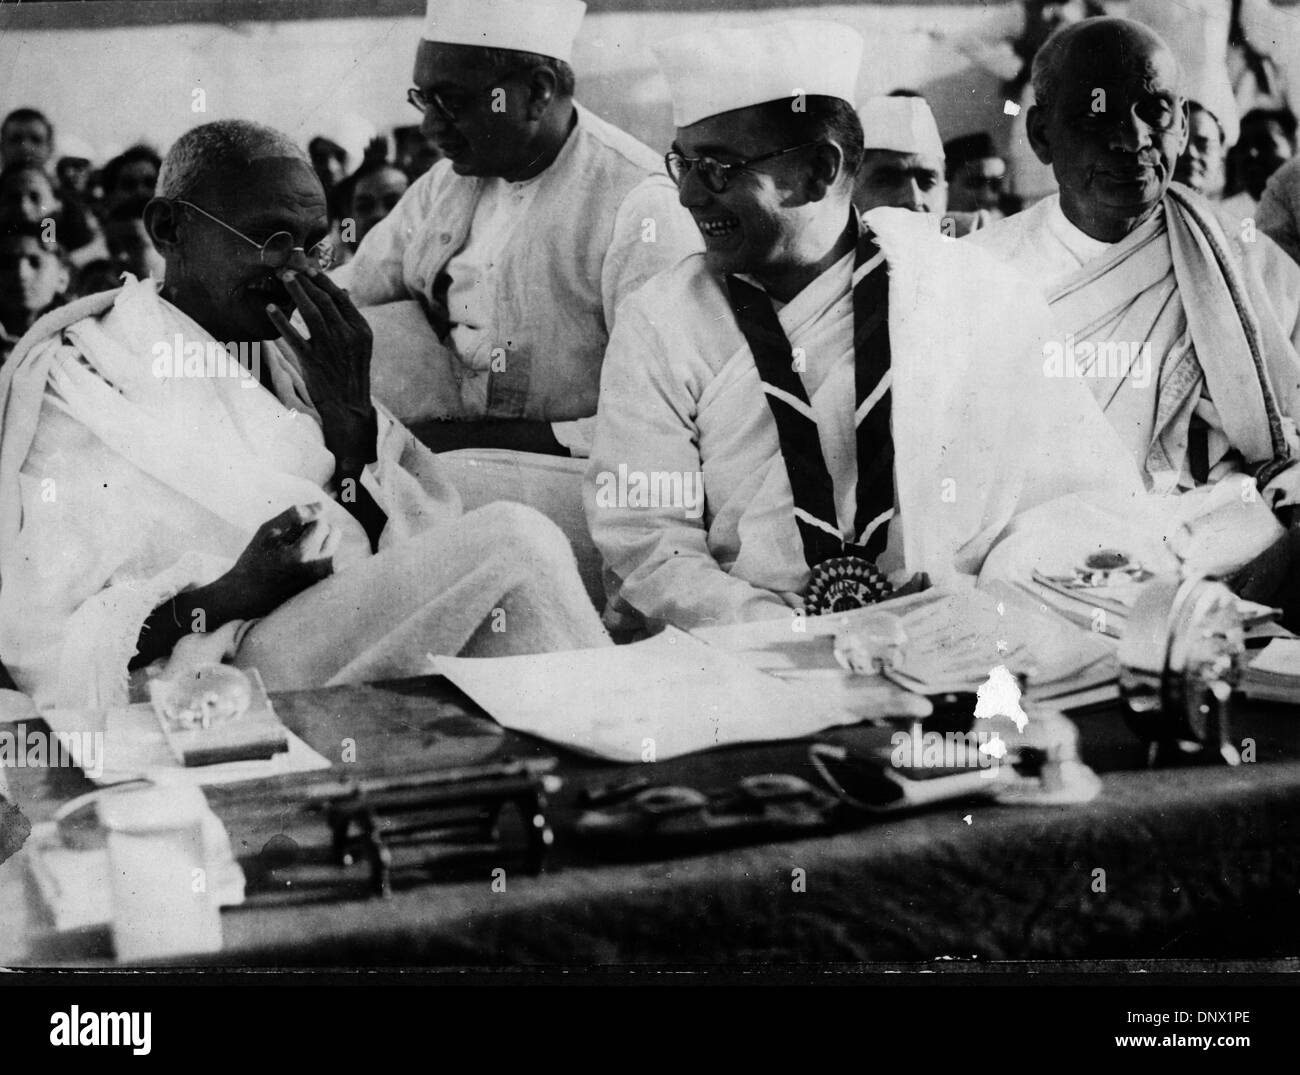 Mayo 6, 1931 - Nueva Delhi, India - El líder religioso Mahatma Gandhi asistieron al 51º Congreso Nacional Indio. (Crédito de la Imagen: © KEYSTONE USA/ZUMAPRESS.com) imágenes Foto de stock